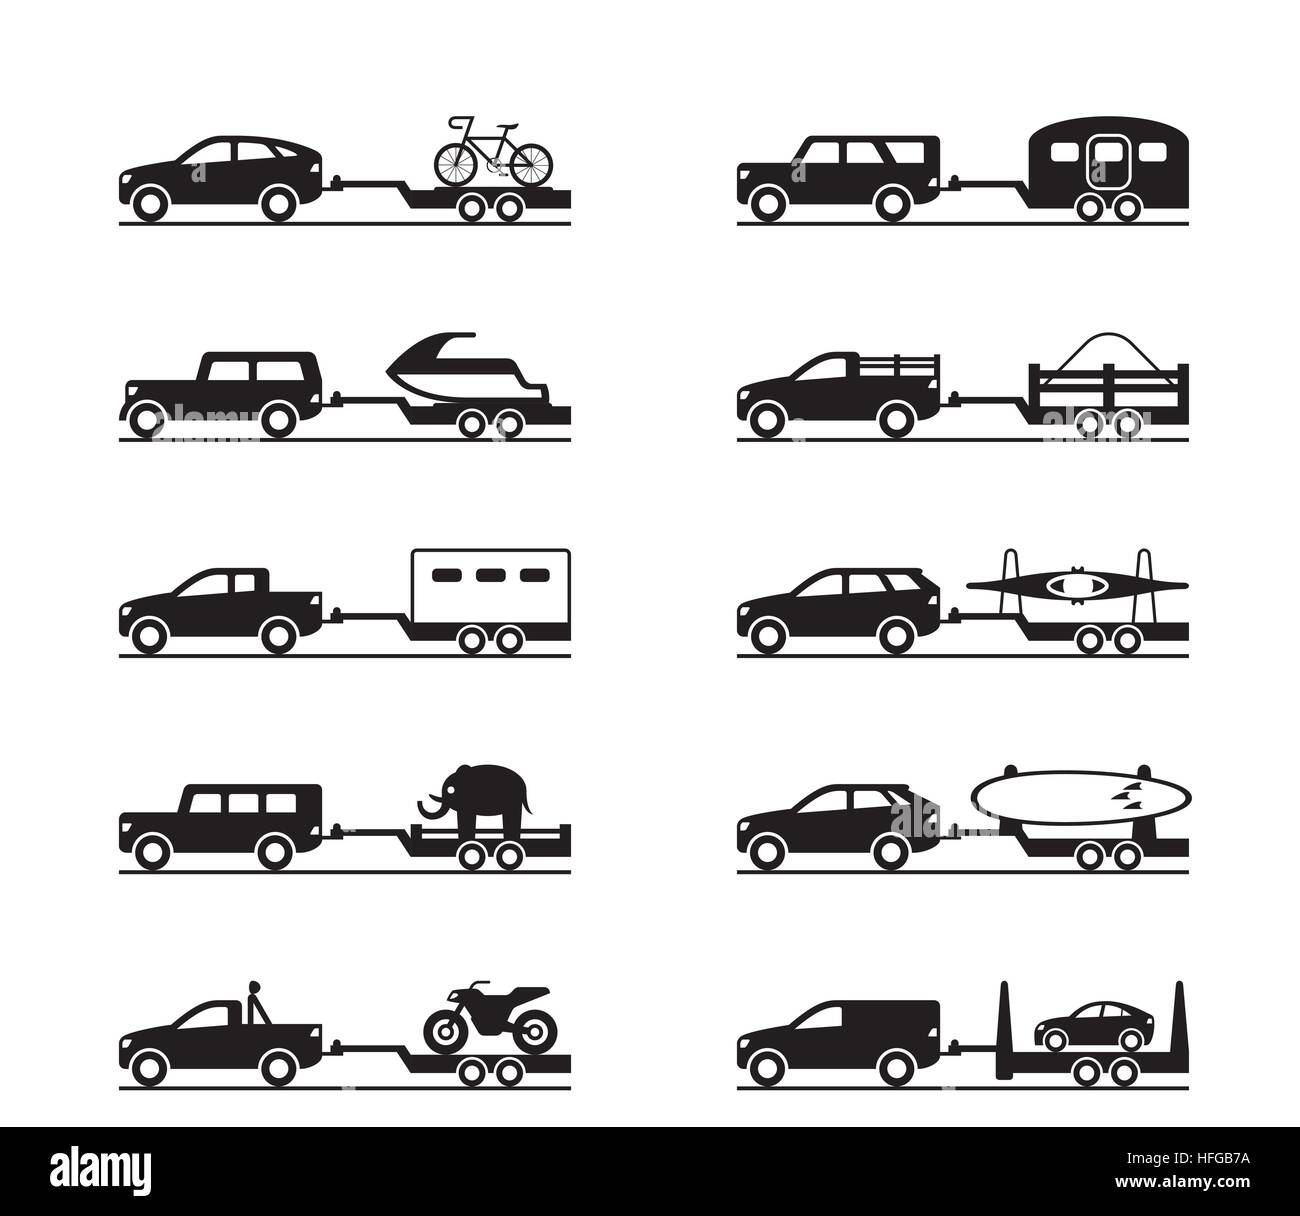 Les fourgonnettes et camionnettes avec remorques - vector illustration Illustration de Vecteur